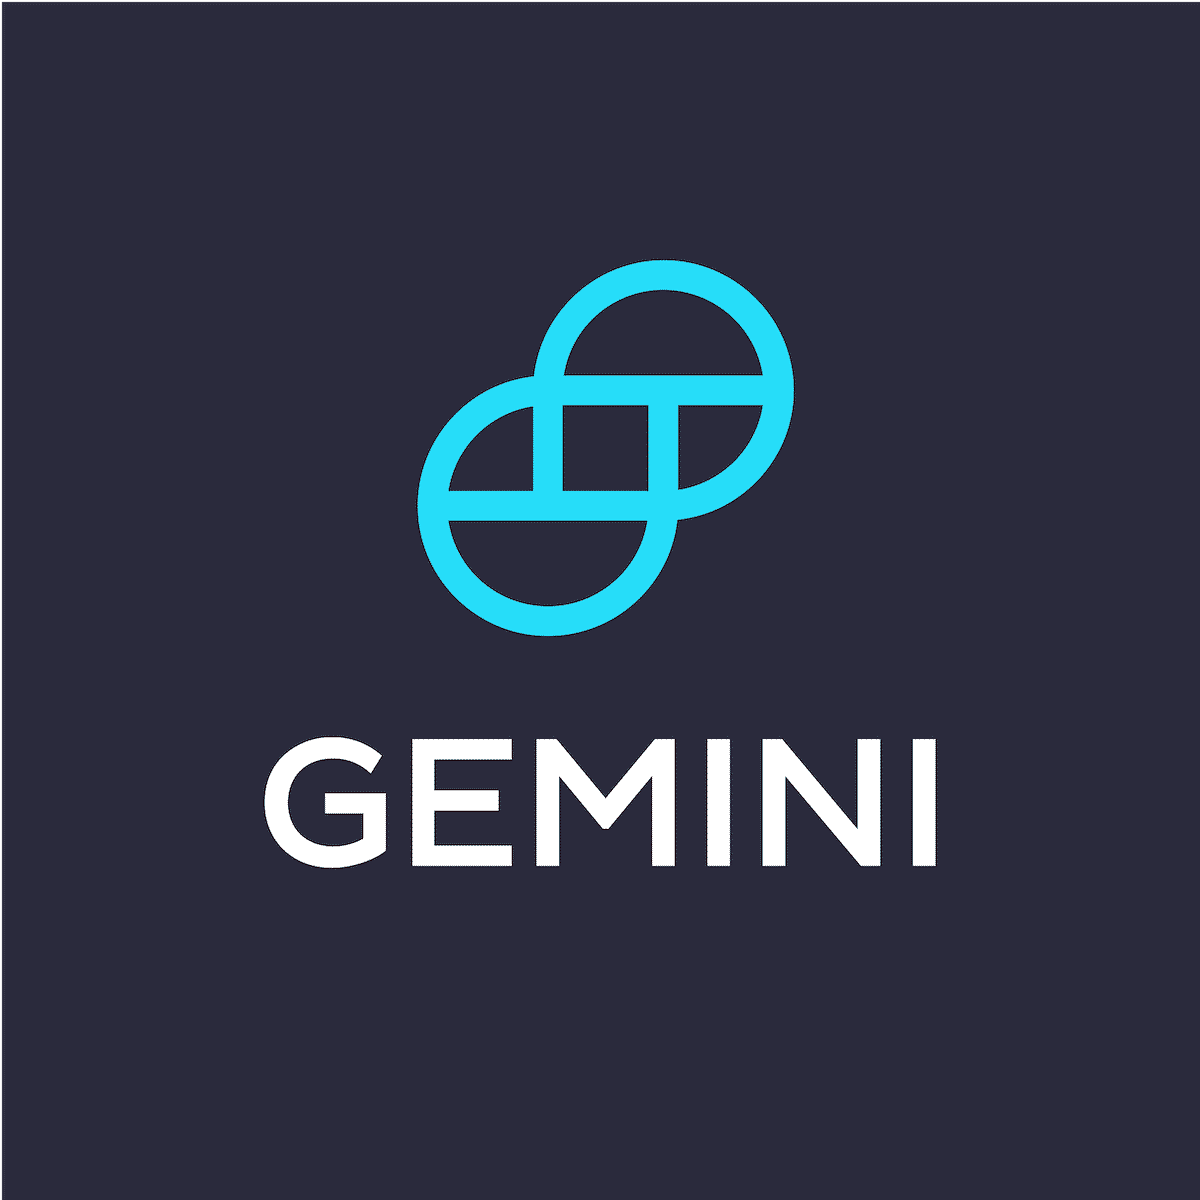 Gemini Earn